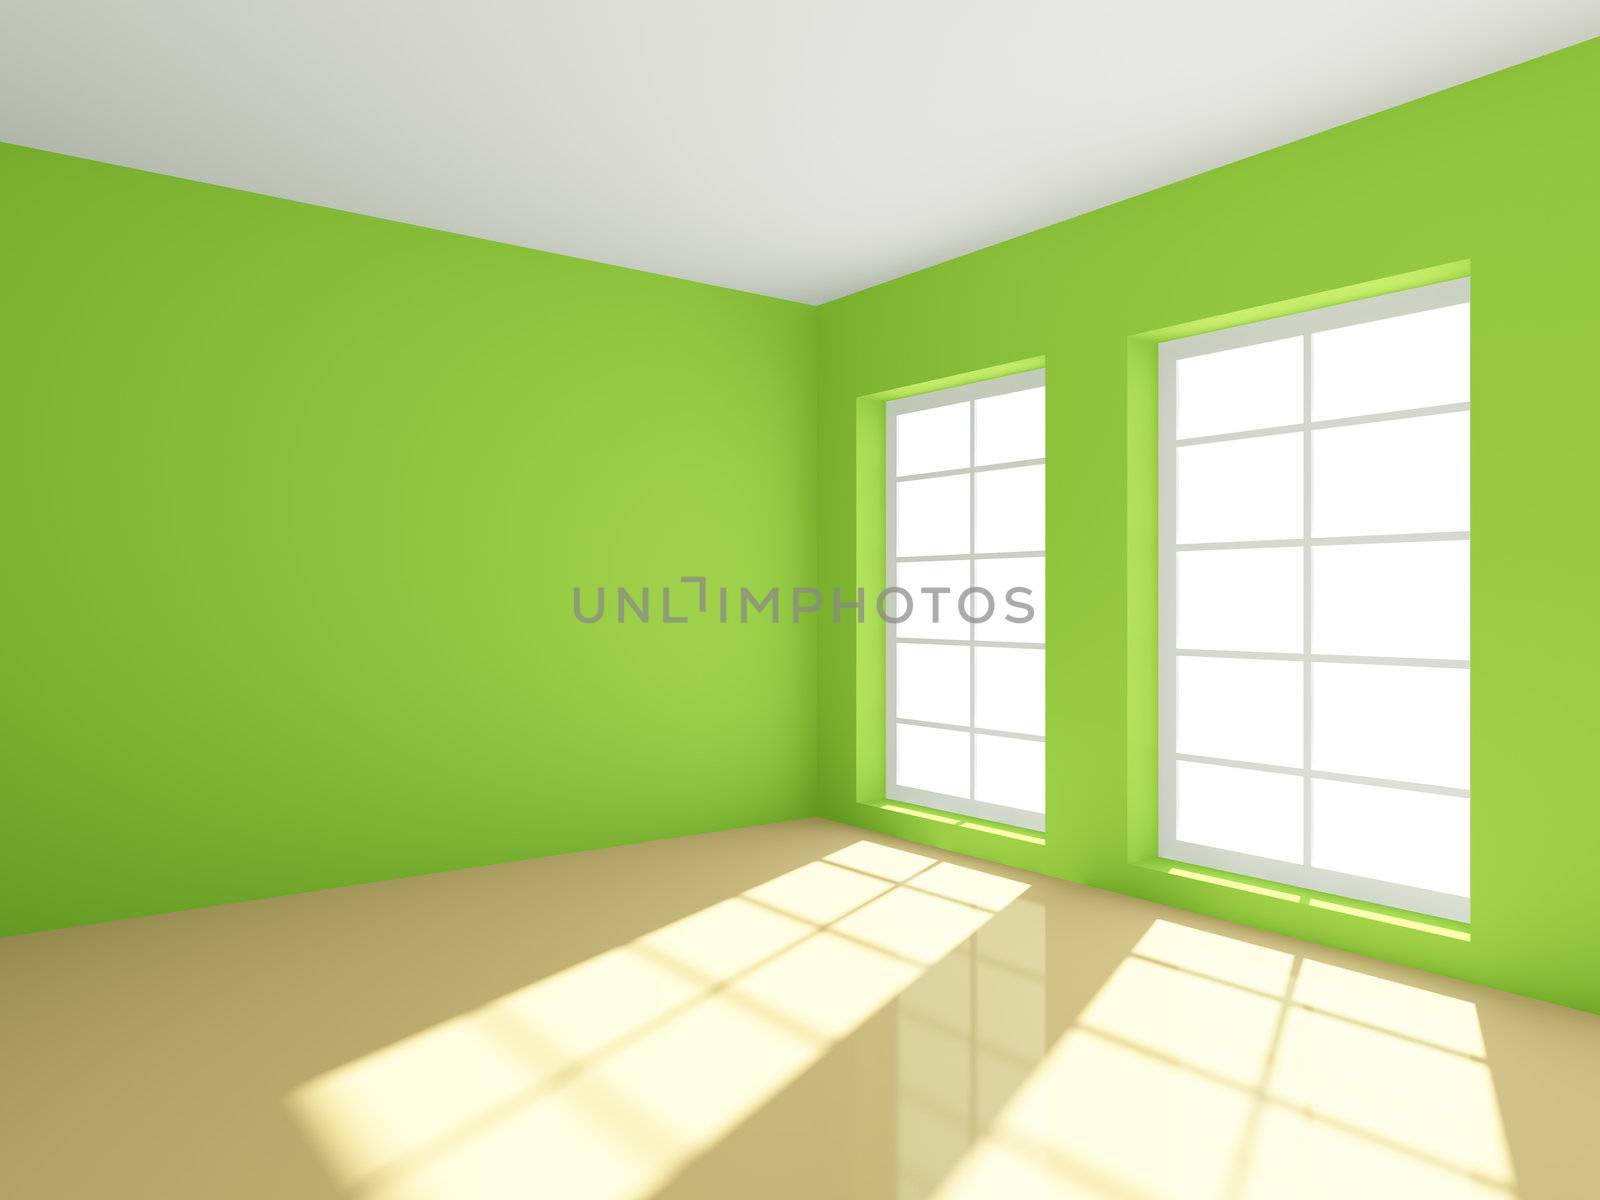 3d rendering of green empty room